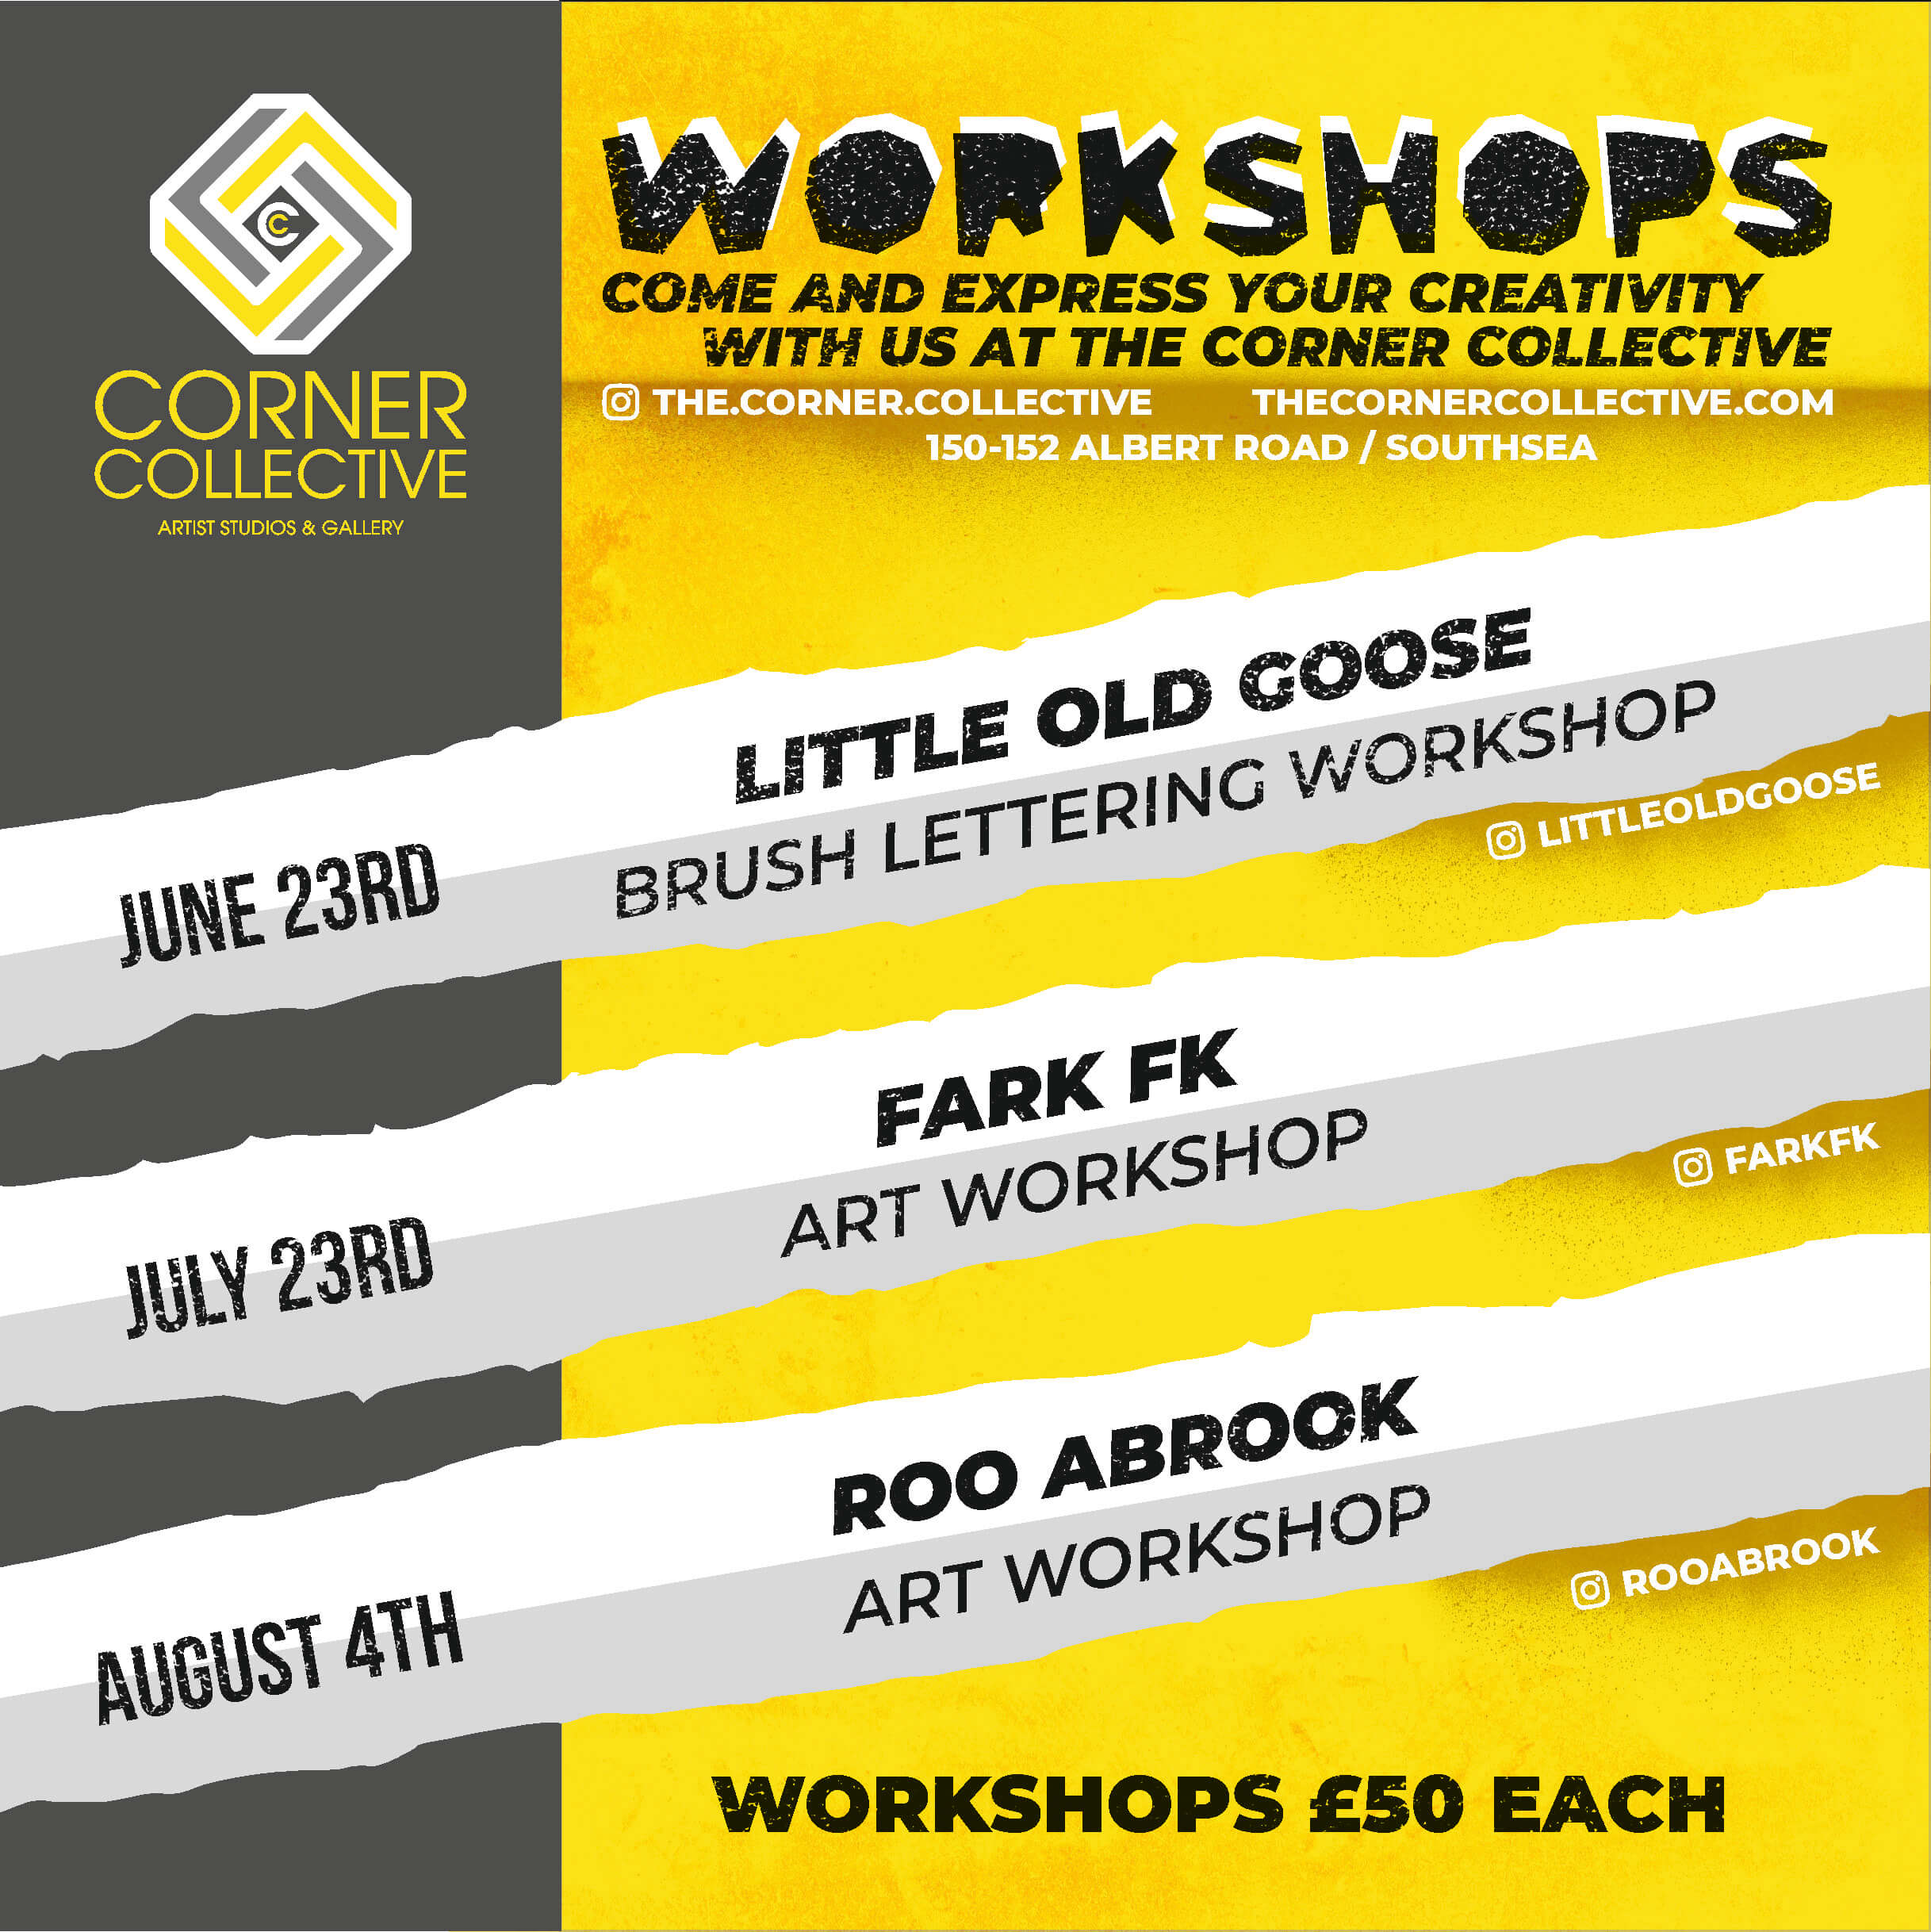 June Workshops